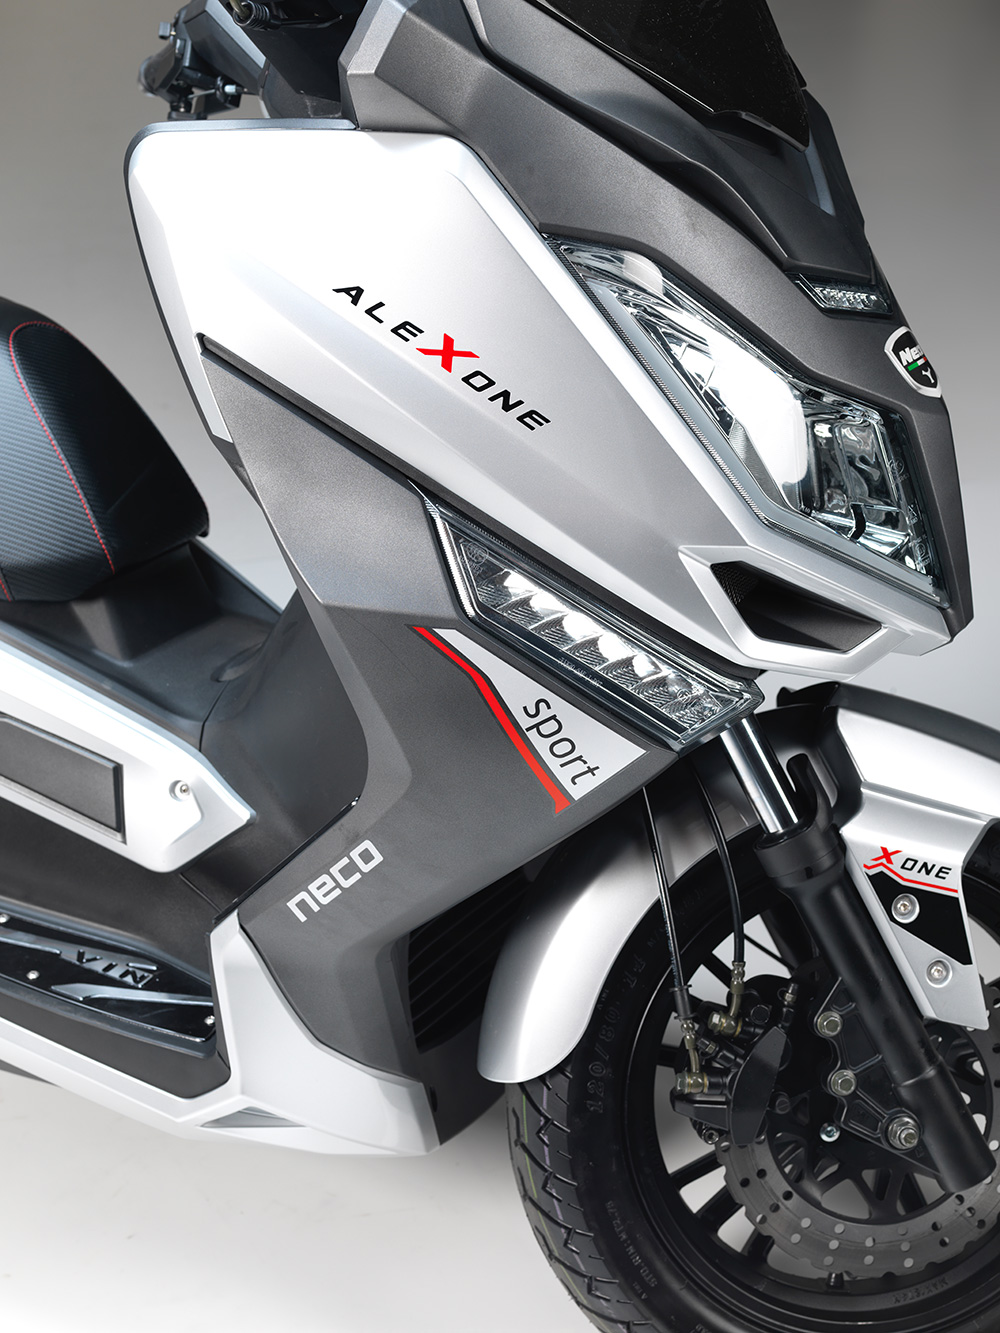 Alexone 125 - NECO Motorcycles